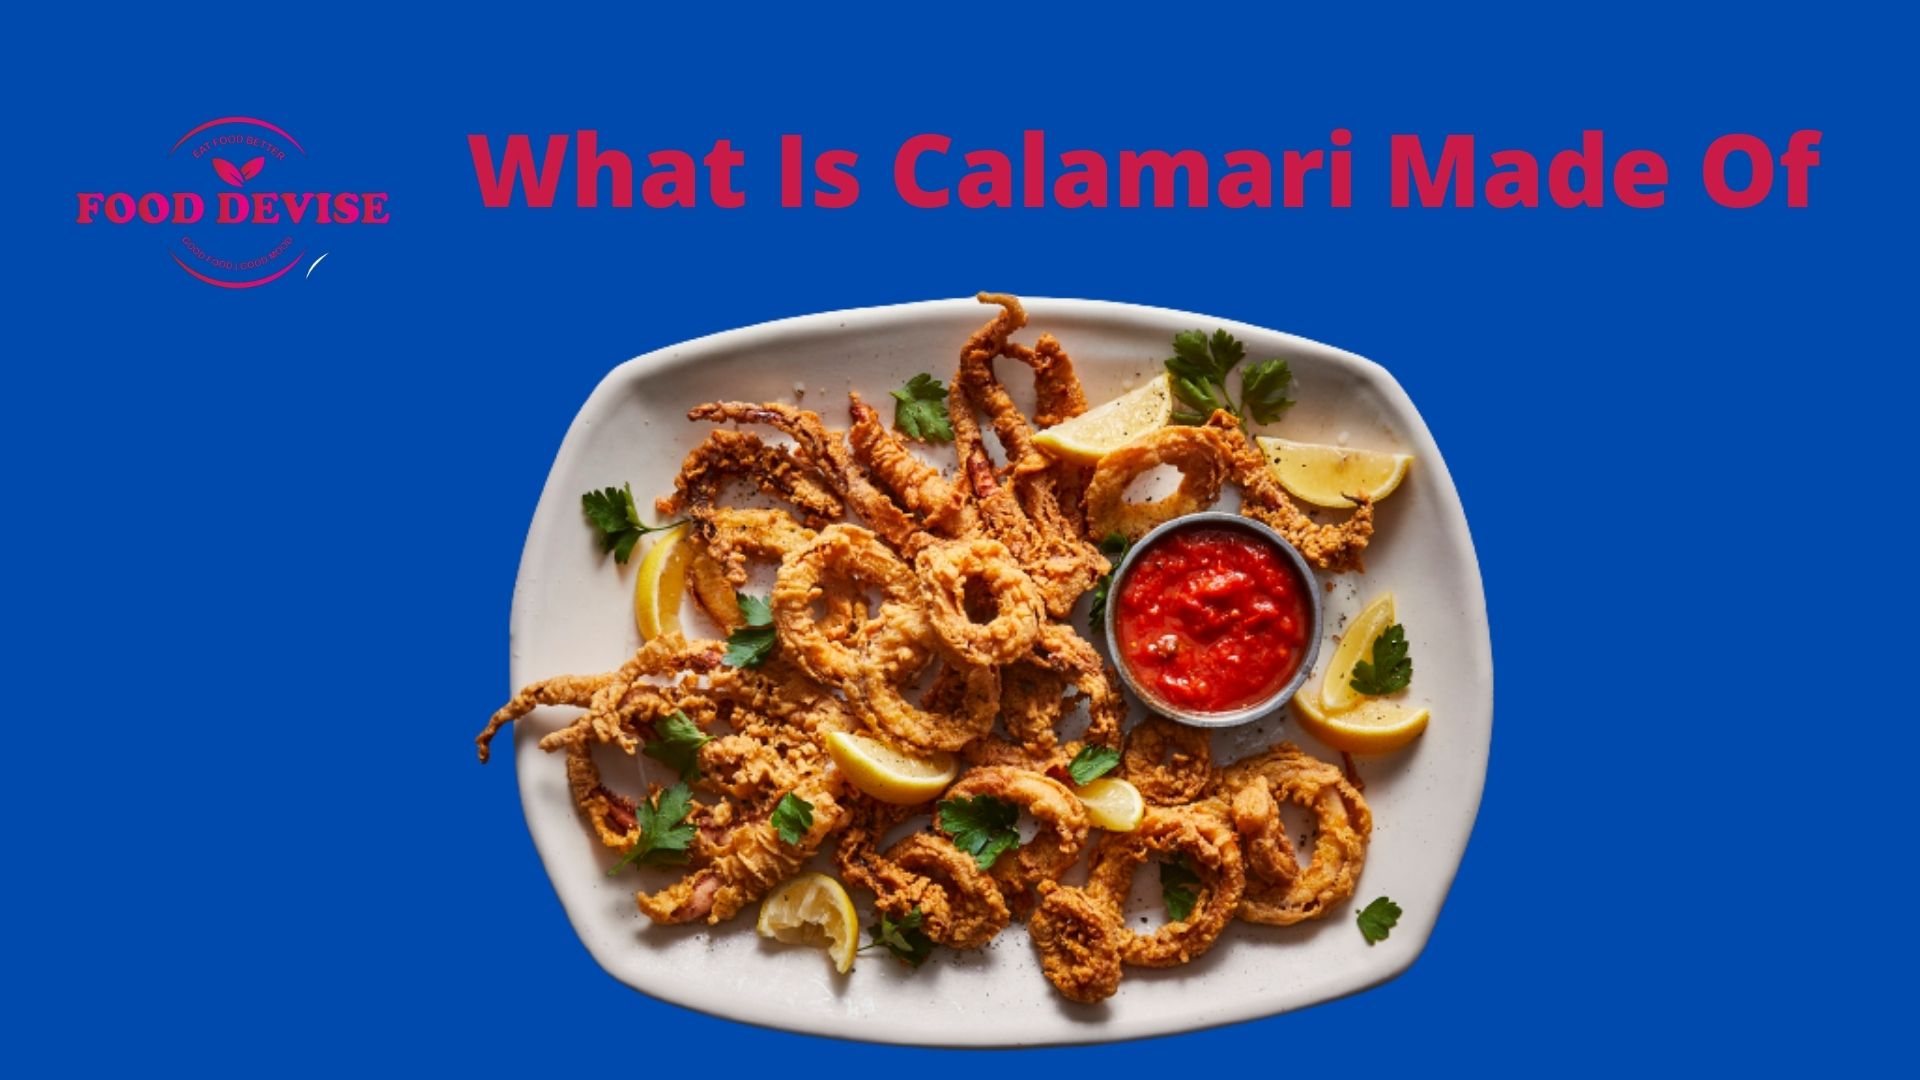 What Is Calamari Made Of?